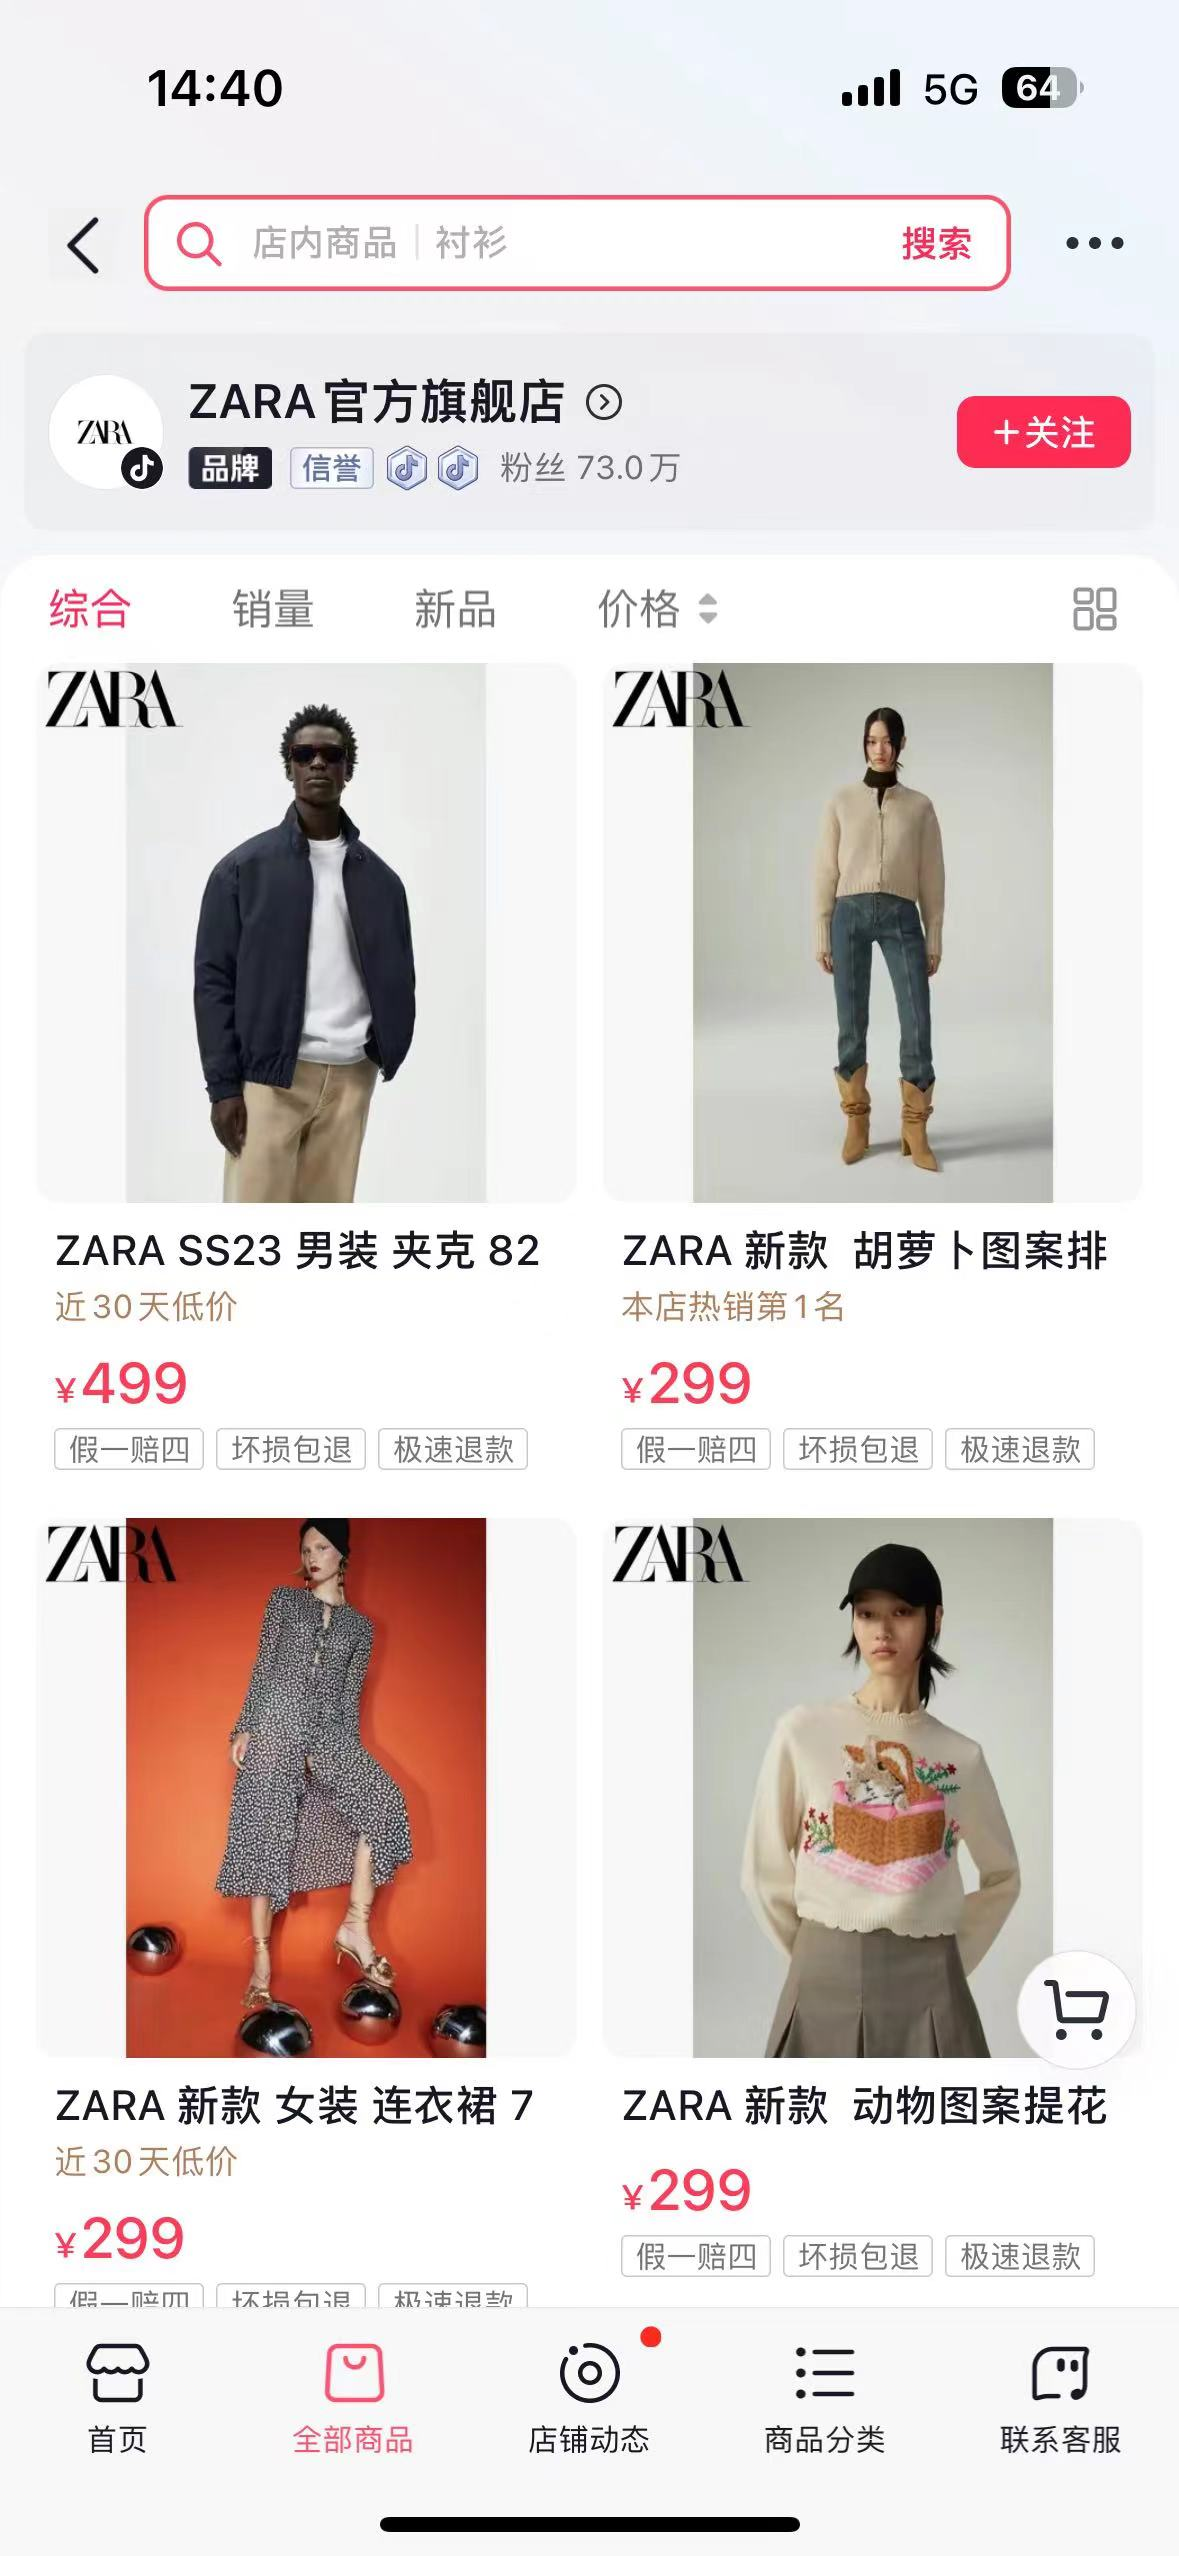 中国区域市场失速后，Zara能在抖音直播找到新机会？